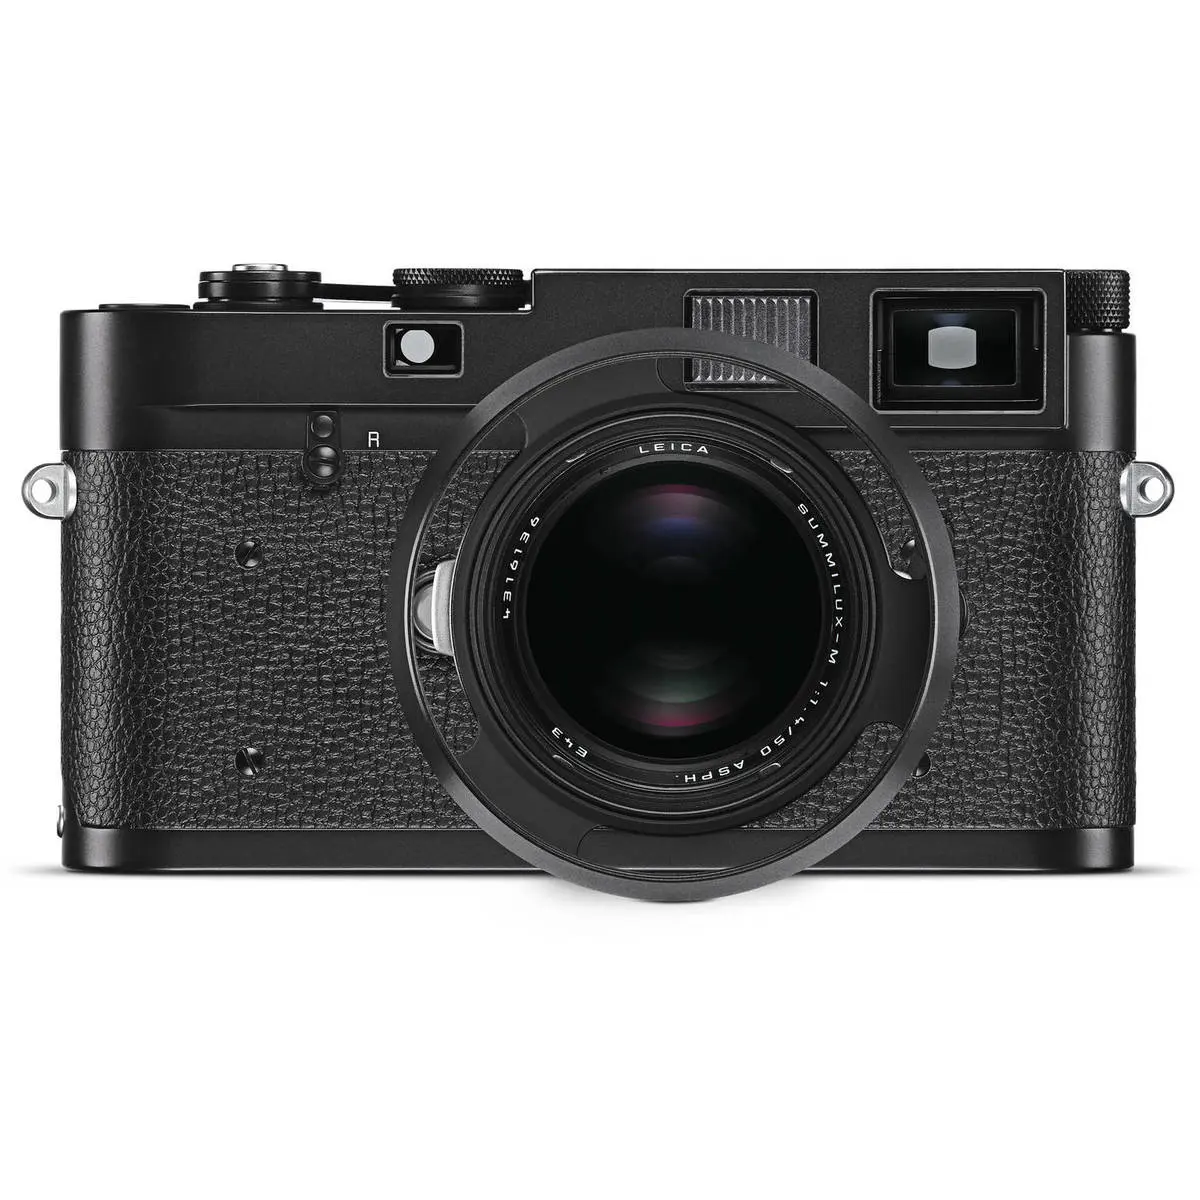 2. LEICA SUMMILUX-M 50 mm f/1.4 ASPH Black Chrome Lens